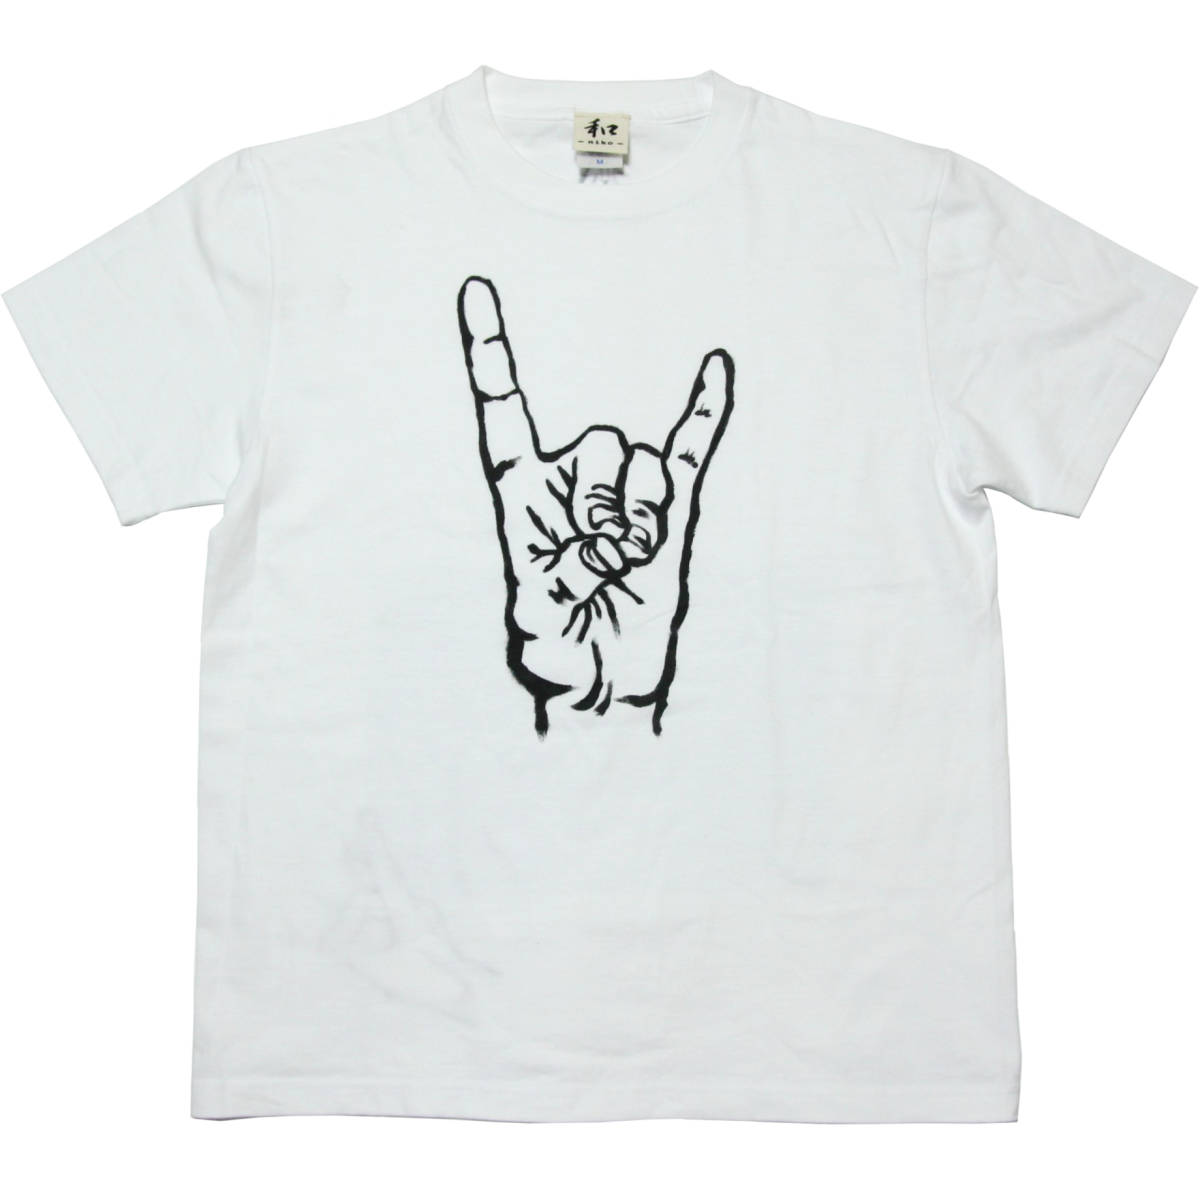 Camiseta de hombre Talla M Camiseta blanca con signo de mano de zorro hecho a mano Camiseta blanca pintada a mano Kanji, talla m, cuello redondo, estampado